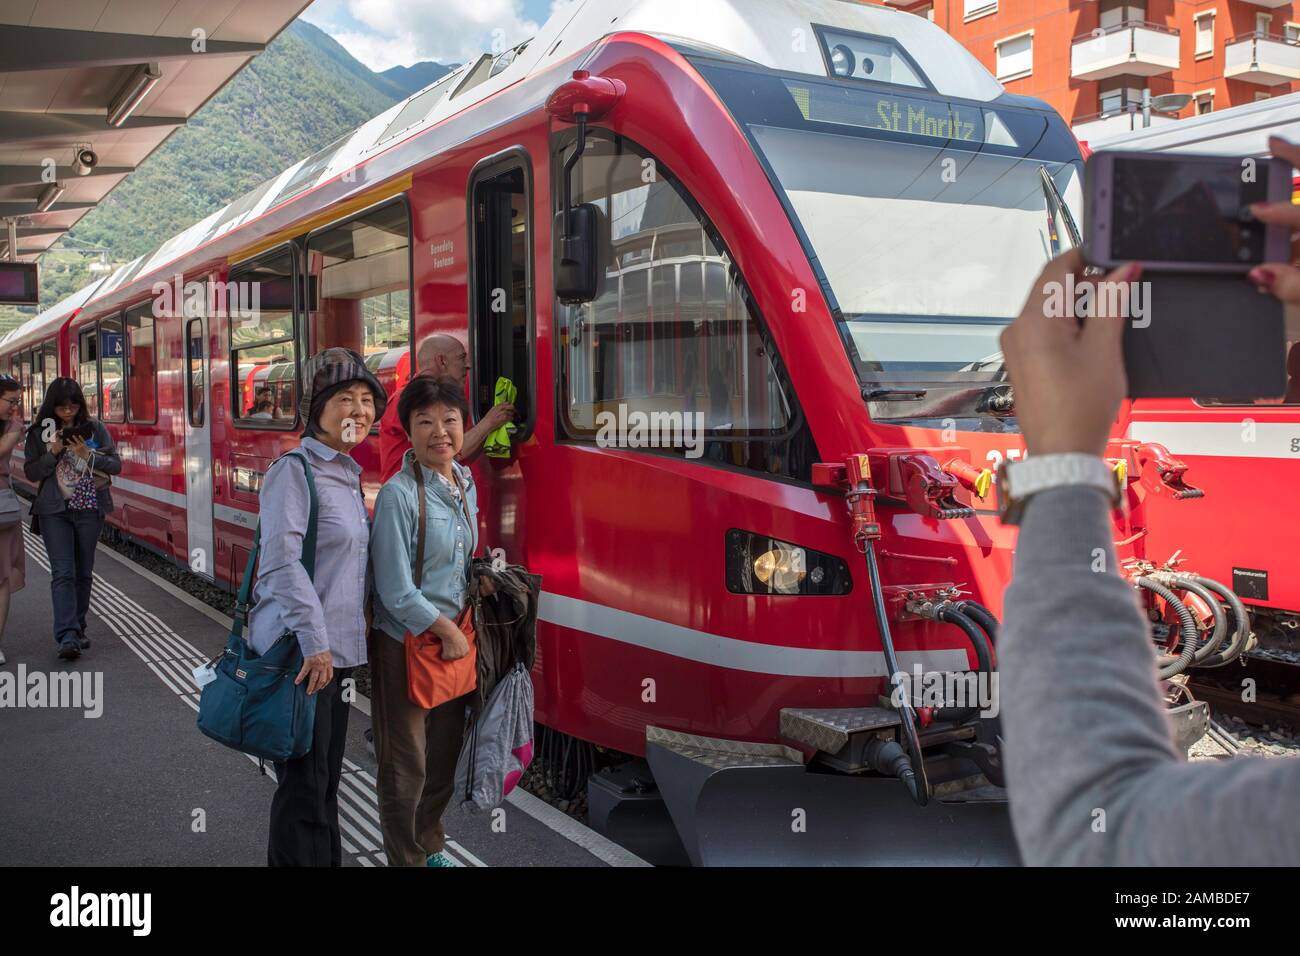 Chinesische Touristen machen neben einem Schweizer Zug, der nach St. Moritz fährt, ein Bild. Bahnhof von Tirano, Italien Stockfoto